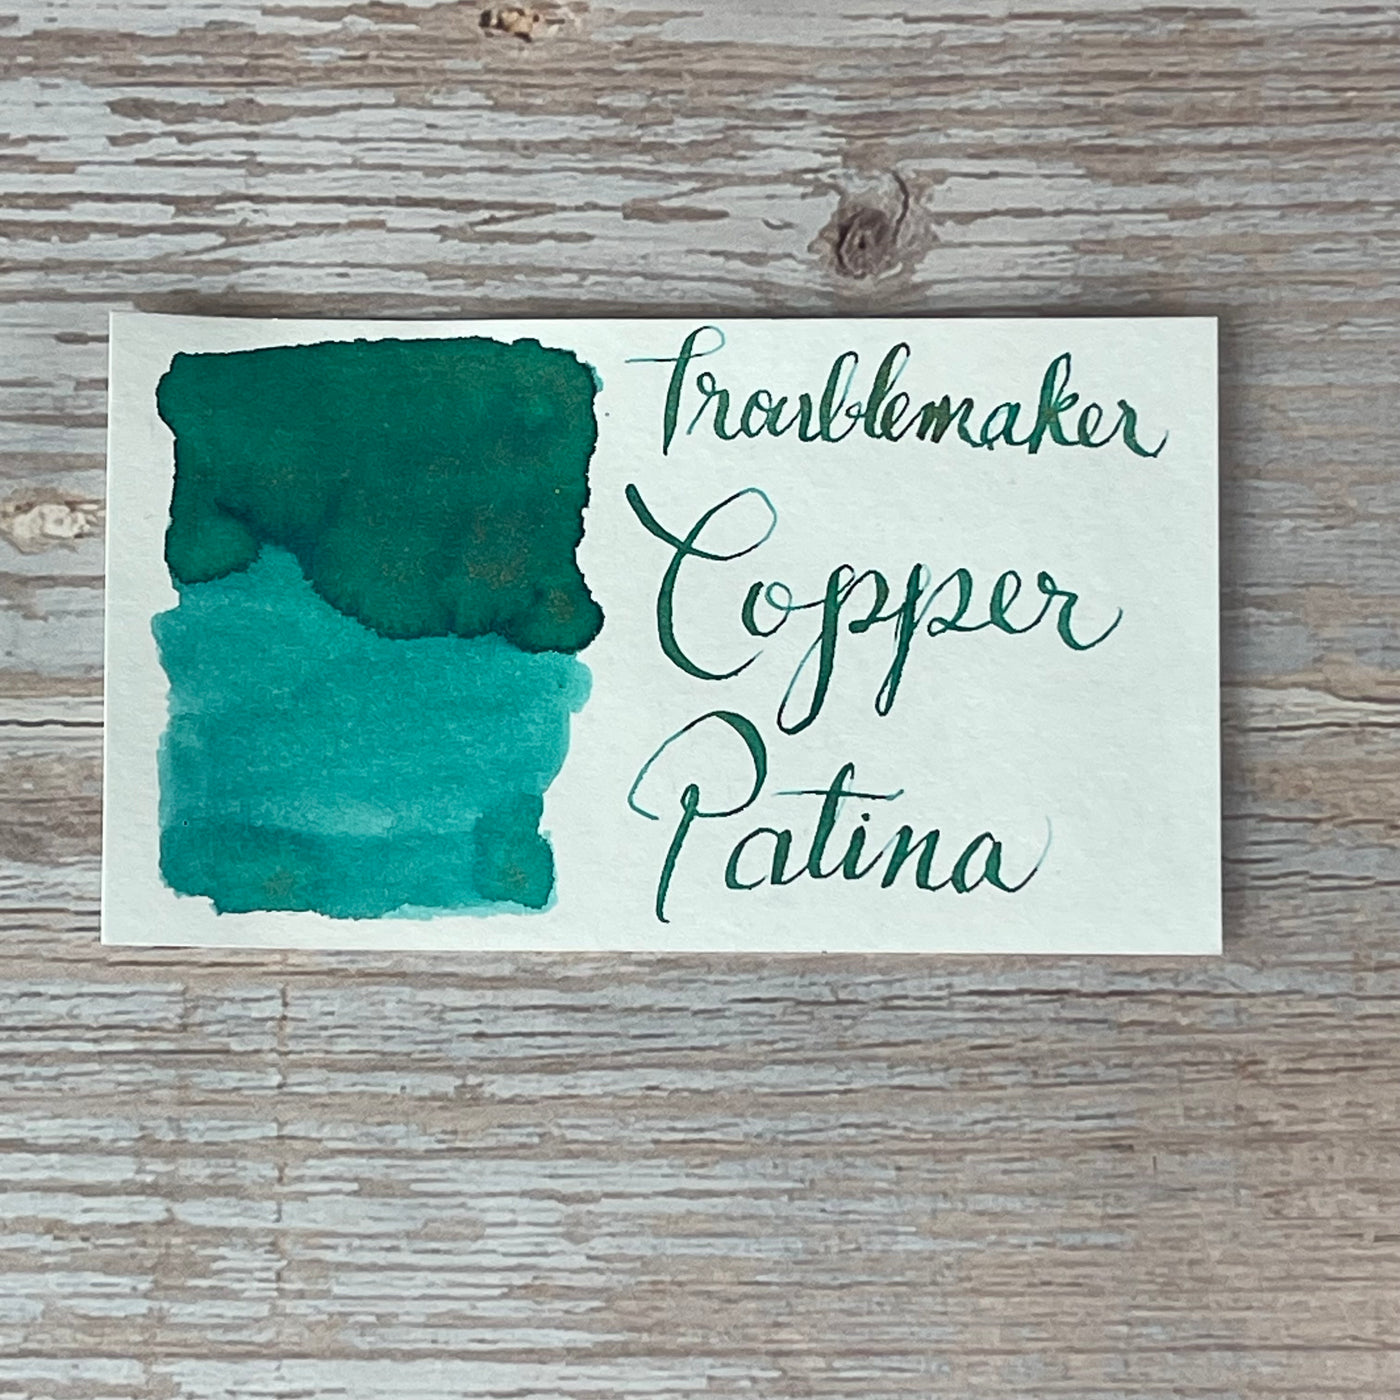 Troublemaker Copper Patina - 60ml Bottled Ink